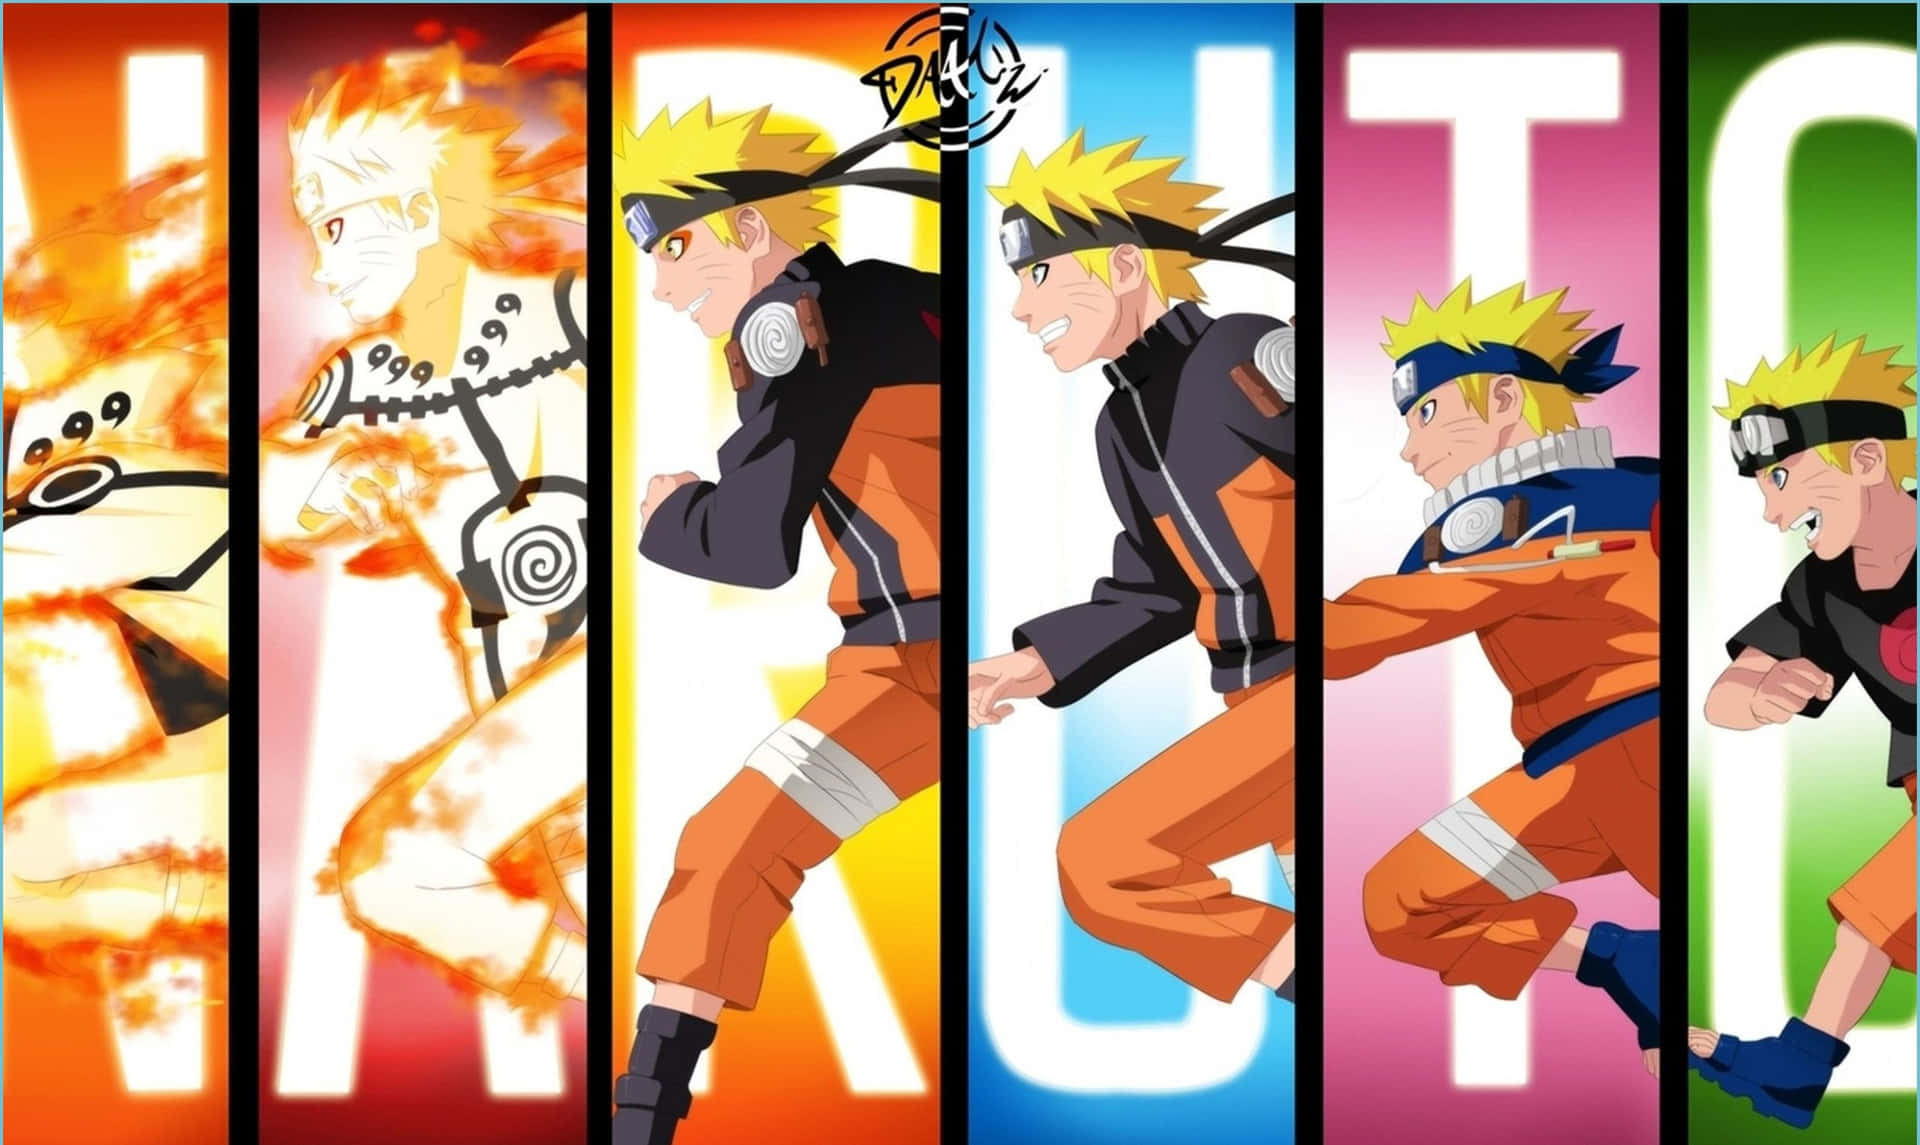 33+] Aesthetic Naruto Wallpapers - WallpaperSafari